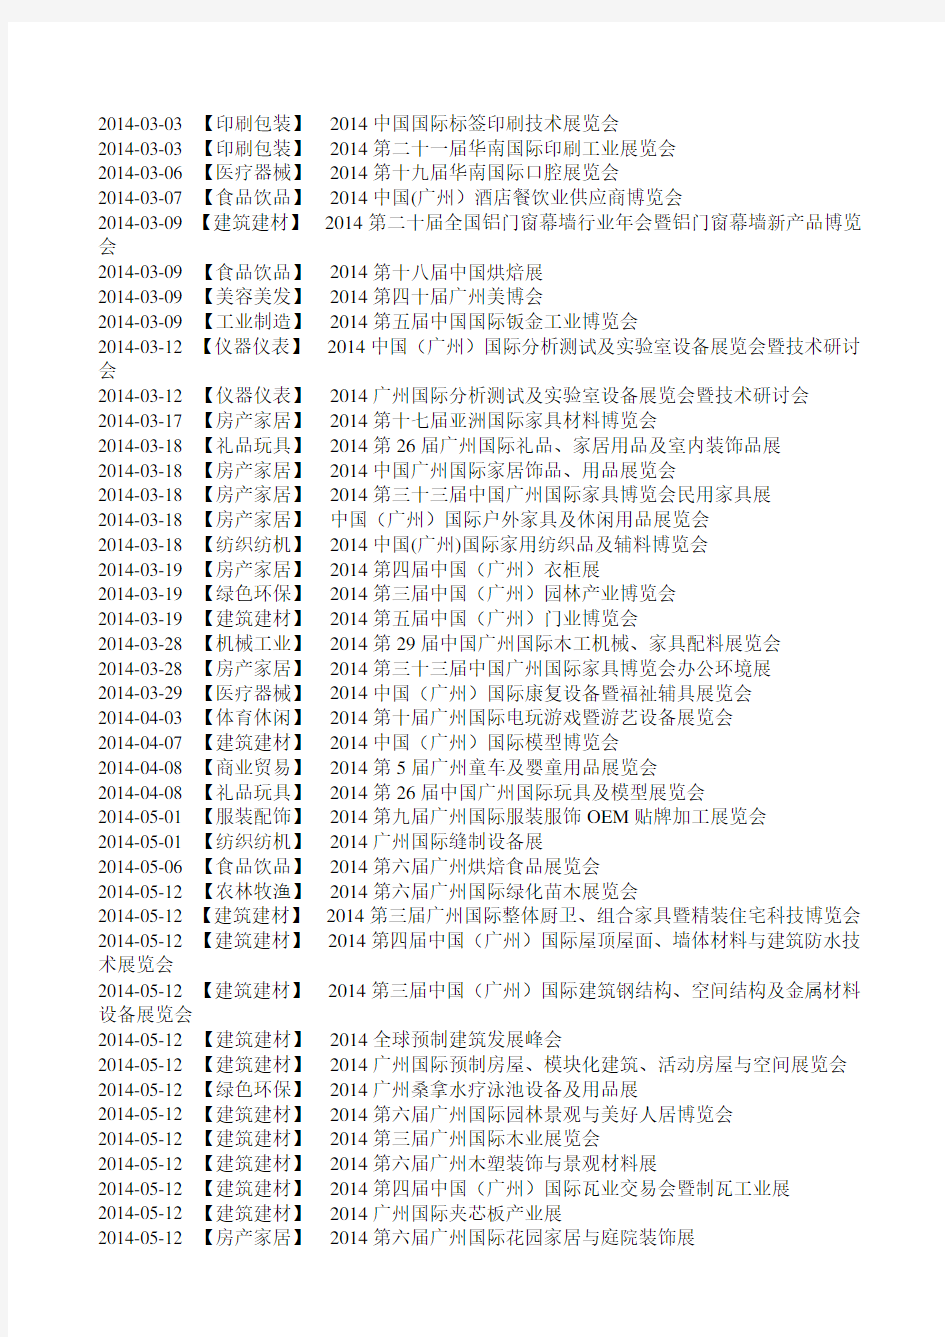 广州会展活动时间安排表